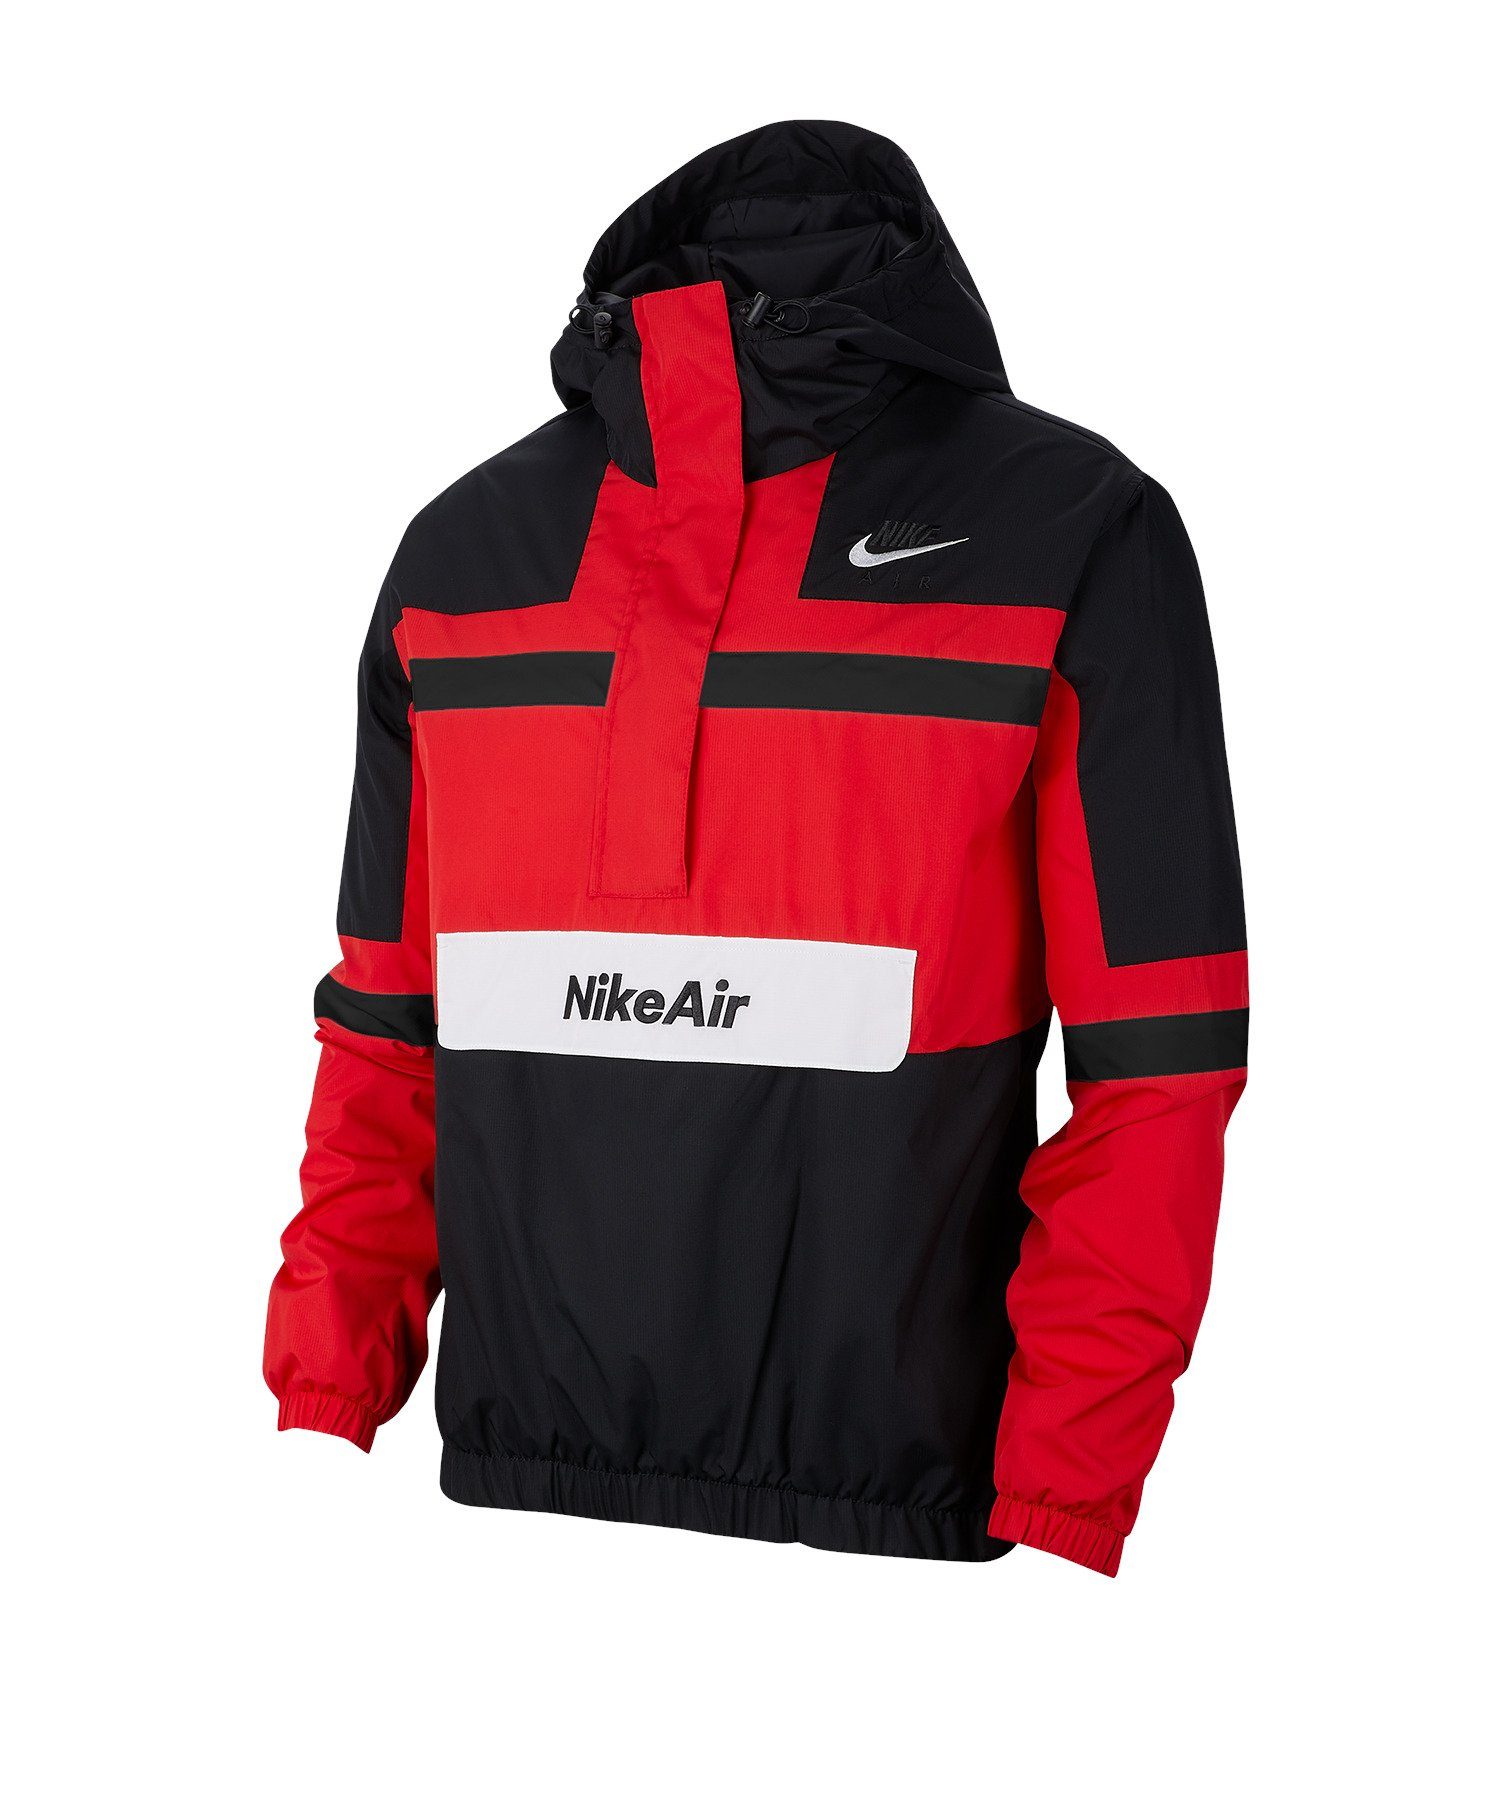 Nike Sportswear Sweatjacke Air Woven Jacket Jacke